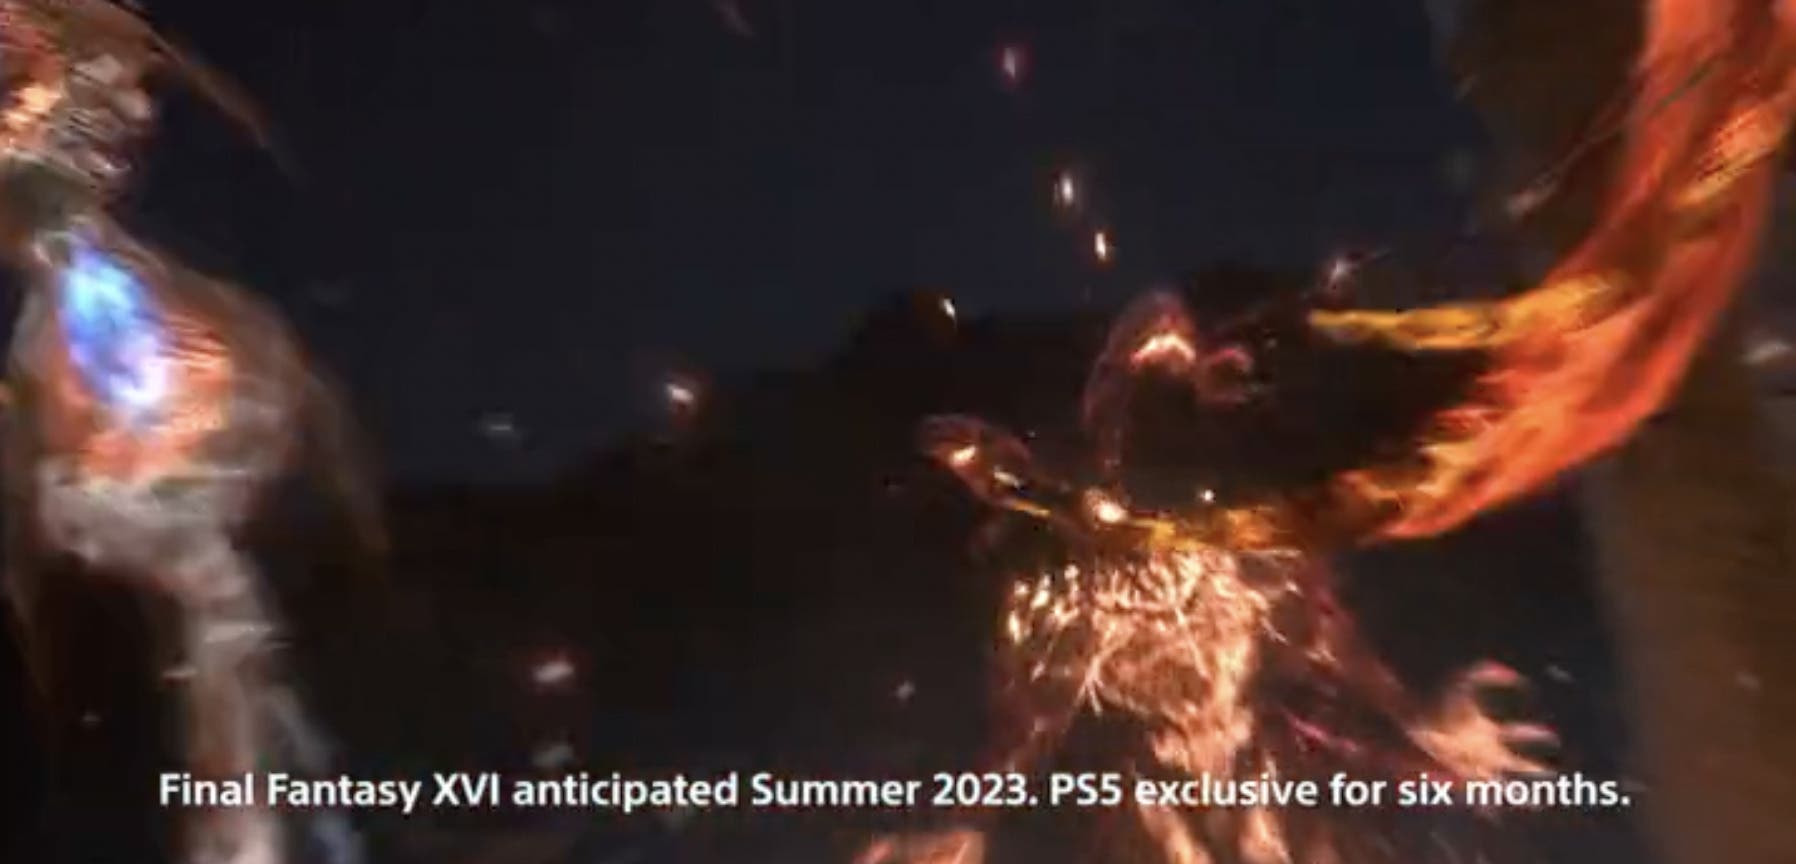 La exclusividad de Final Fantasy XVI en PS5 termina en unas semanas - Vandal